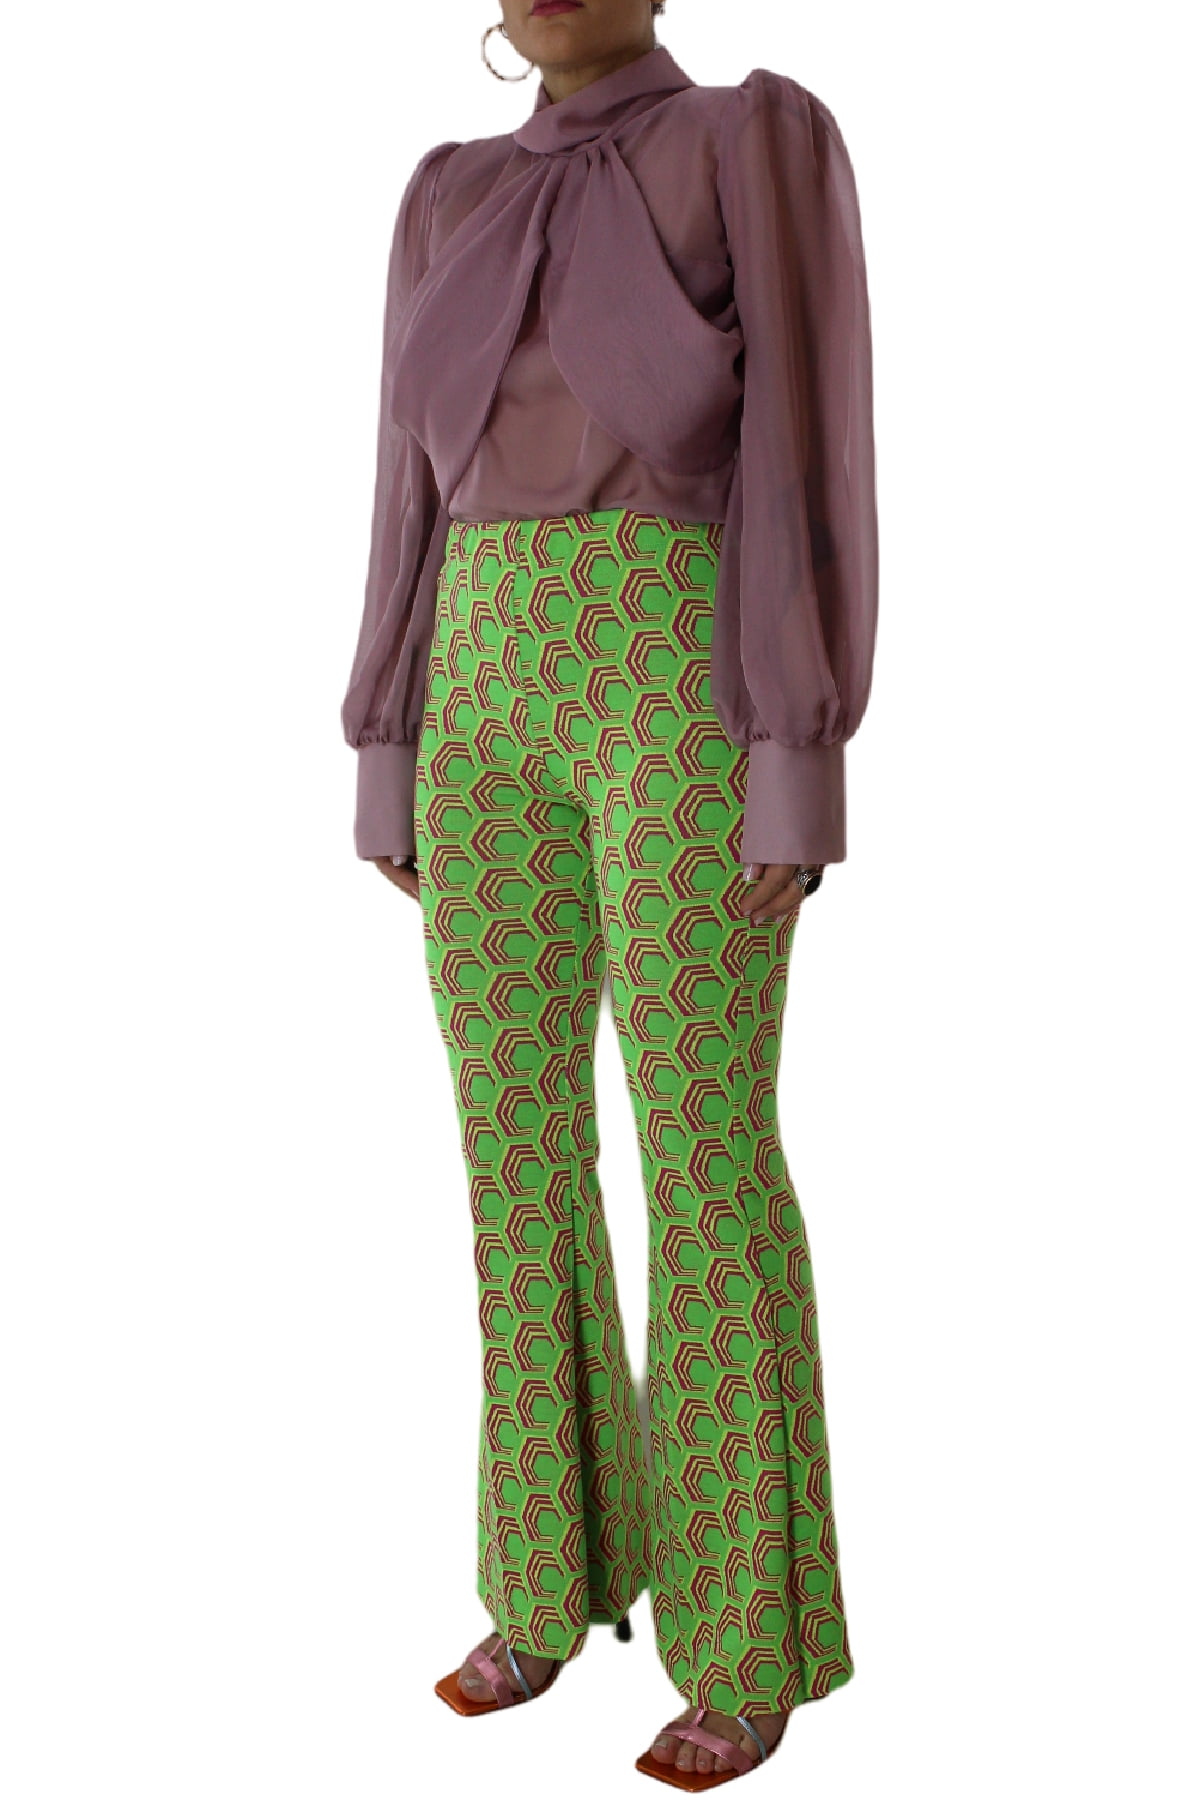 Pantalone donna vita alta a zampa con elastico in vita tessuto jersey con stampa geometrica